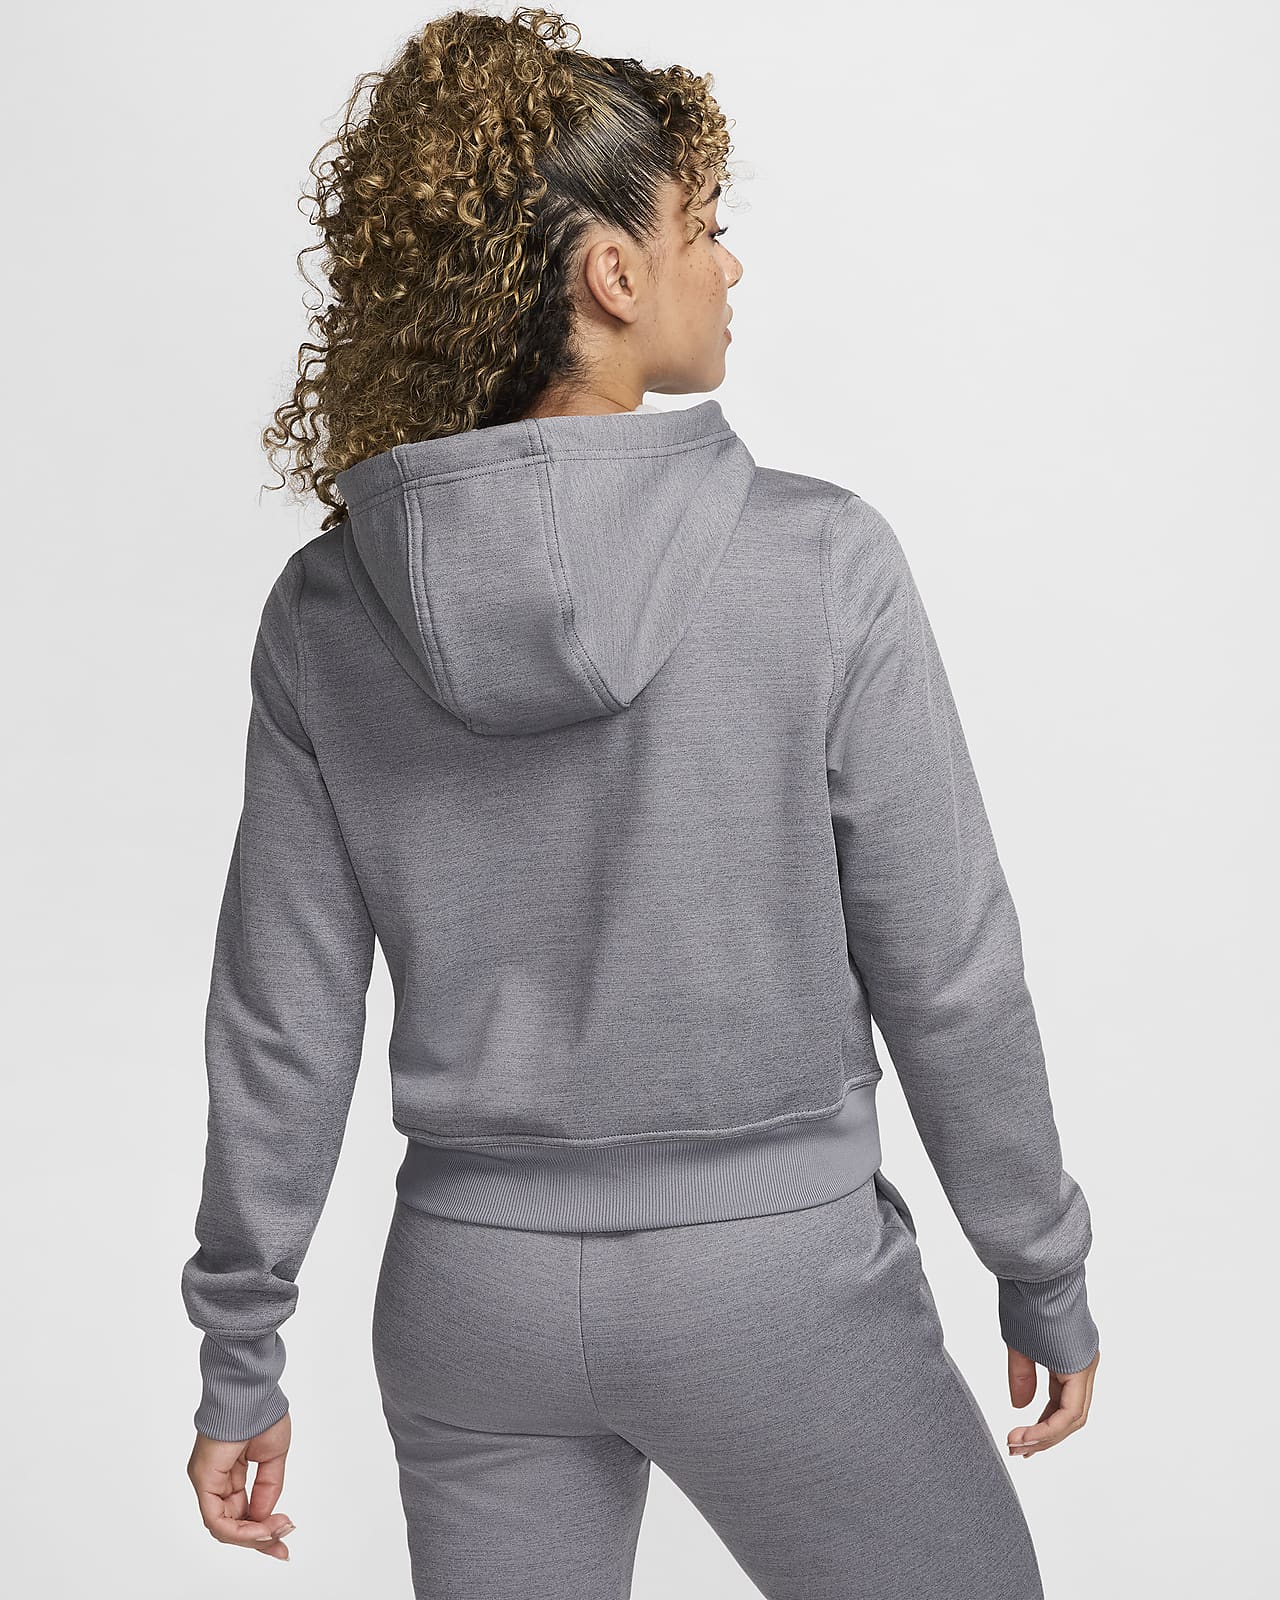 Women\'s Nike Hoodie. Therma-FIT Full-Zip One